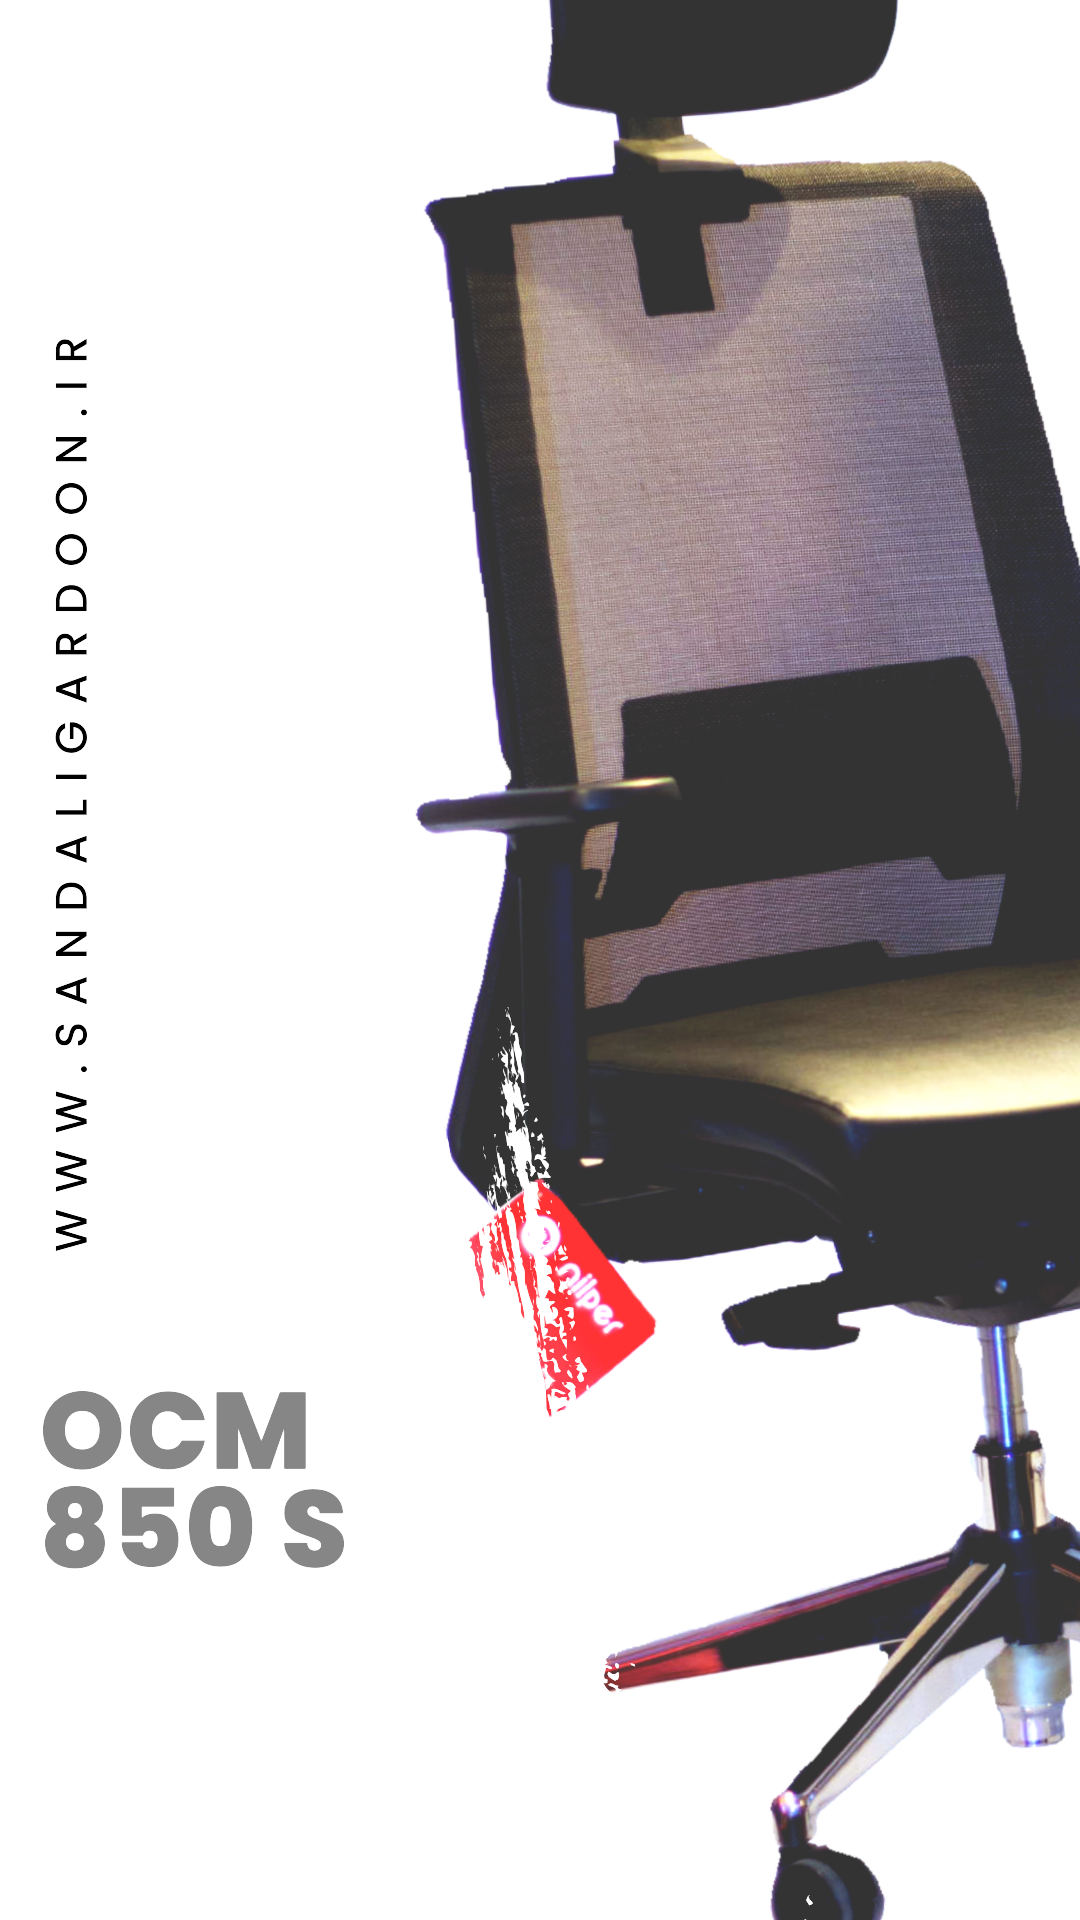 صندلی گردون نیلپر OCM850 S